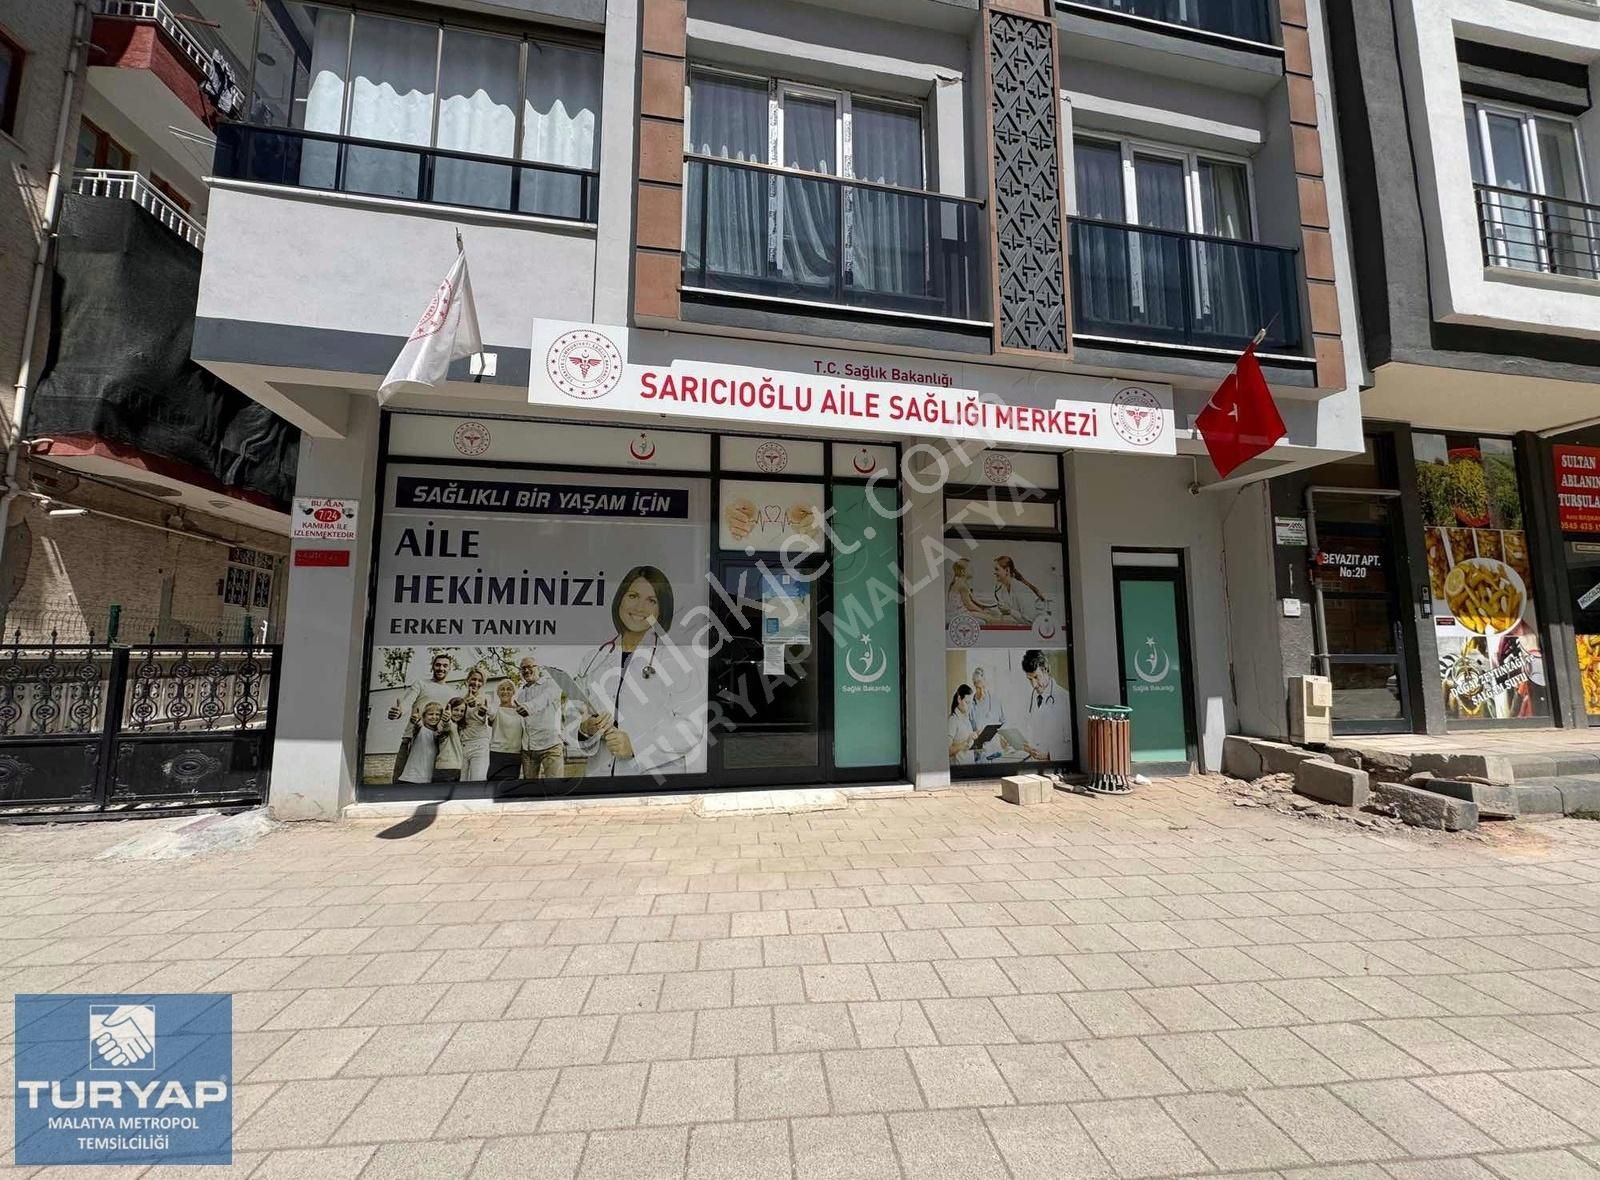 Battalgazi Sarıcıoğlu Satılık Dükkan & Mağaza TURYAP METROPOL'DEN SARICIOĞLUNDA SATILIK 170m² DÜKKAN